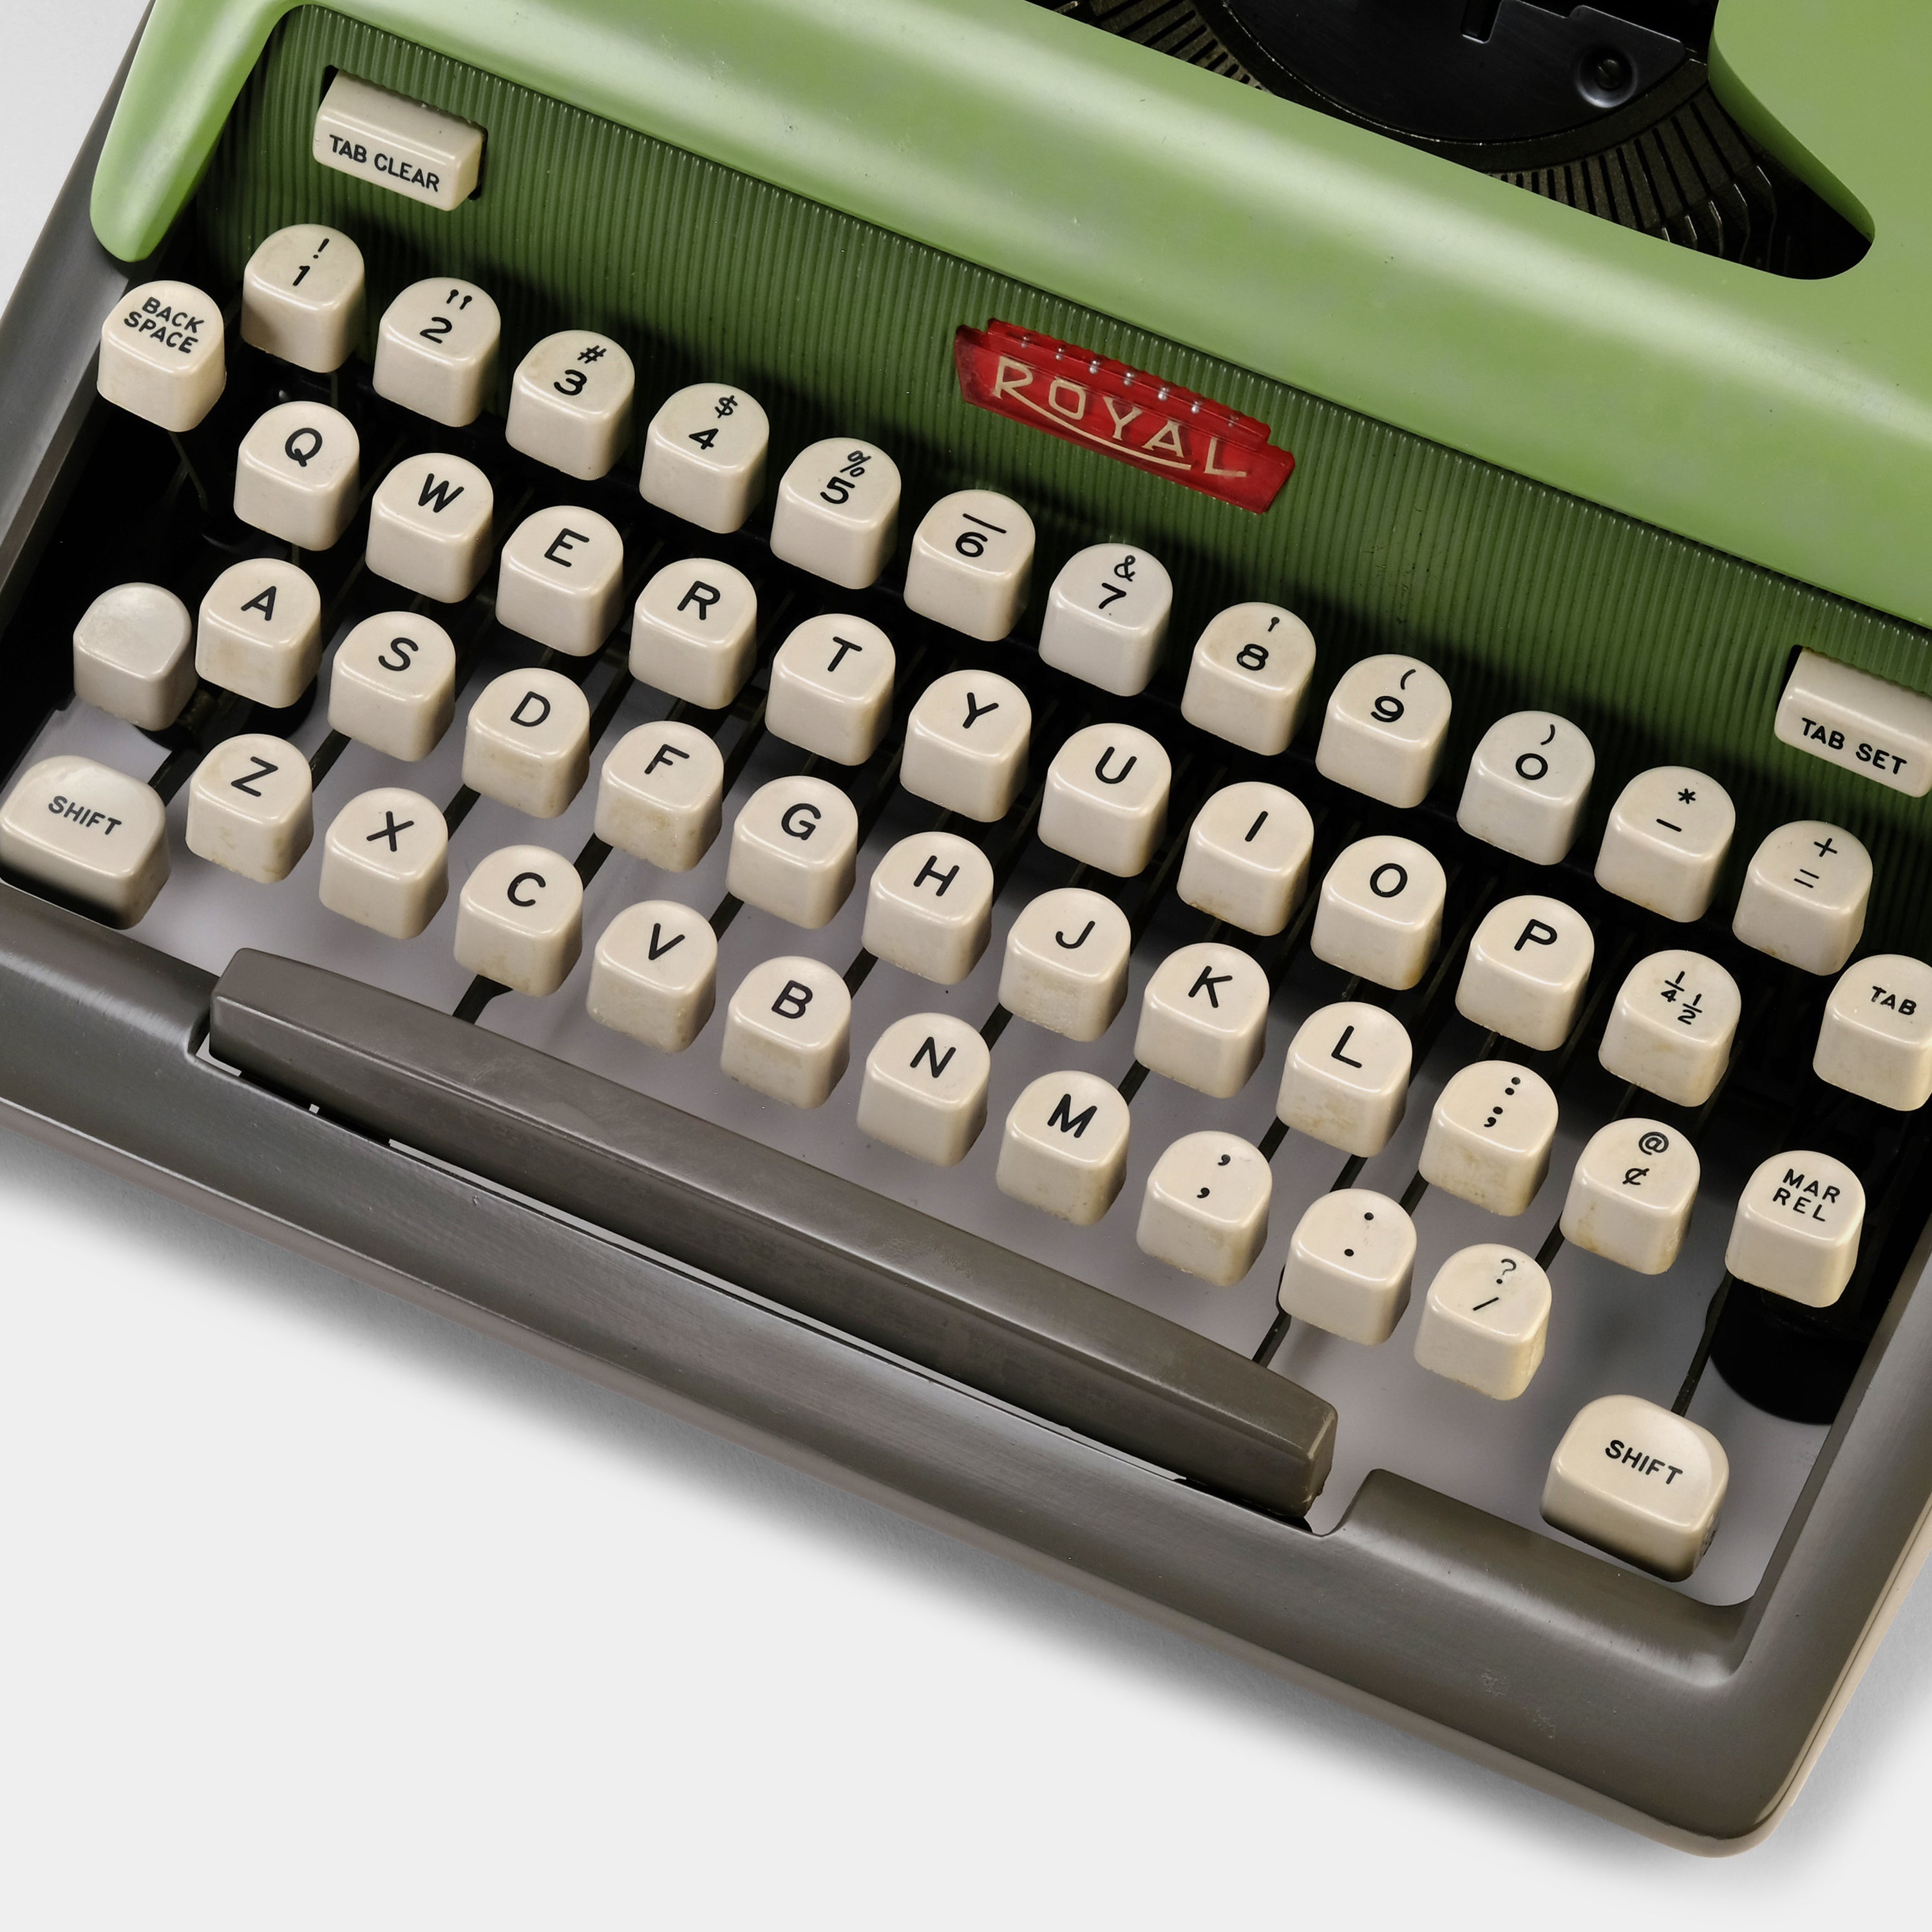 Royal Futura 800 Green Manual Typewriter and Case